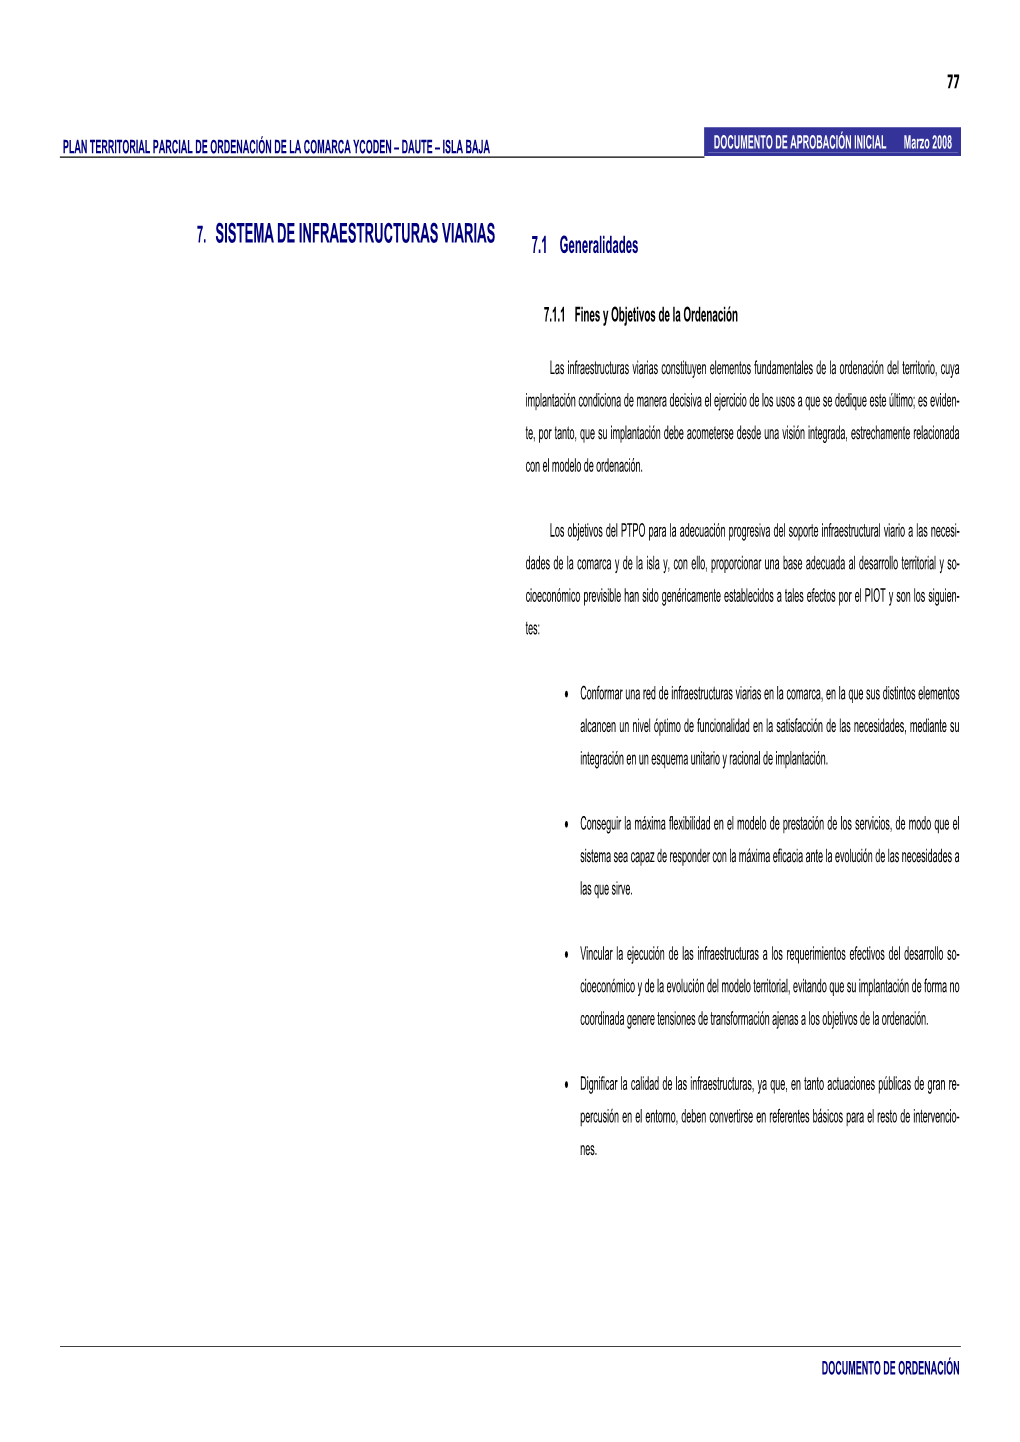 7. SISTEMA DE INFRAESTRUCTURAS VIARIAS 7.1 Generalidades